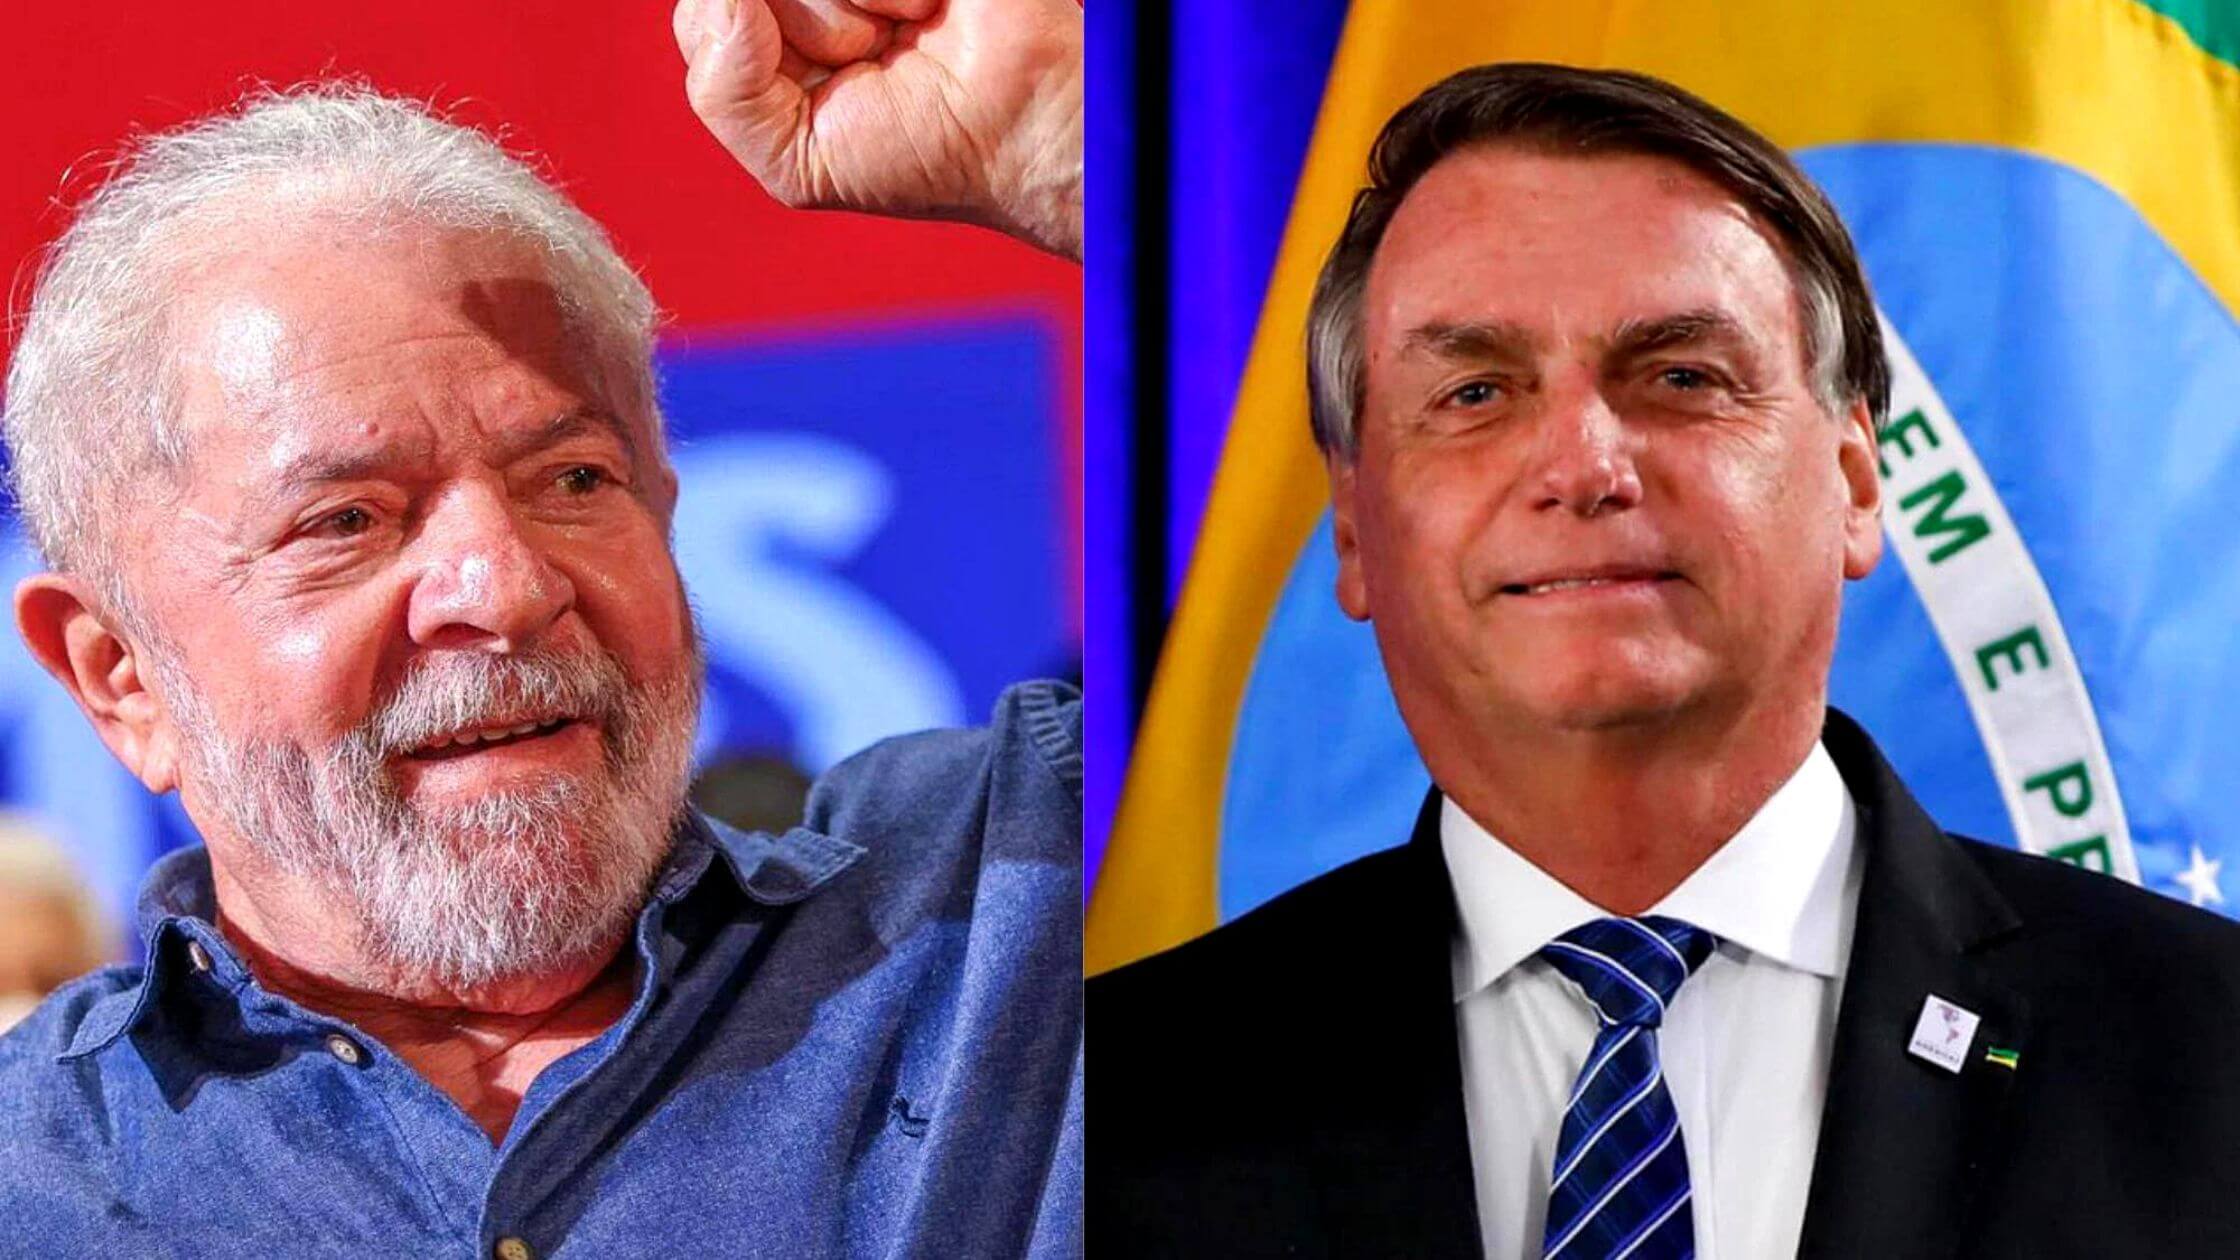 Los actores de Avengers hacen un llamado a votar en las elecciones presidenciales en Brasil